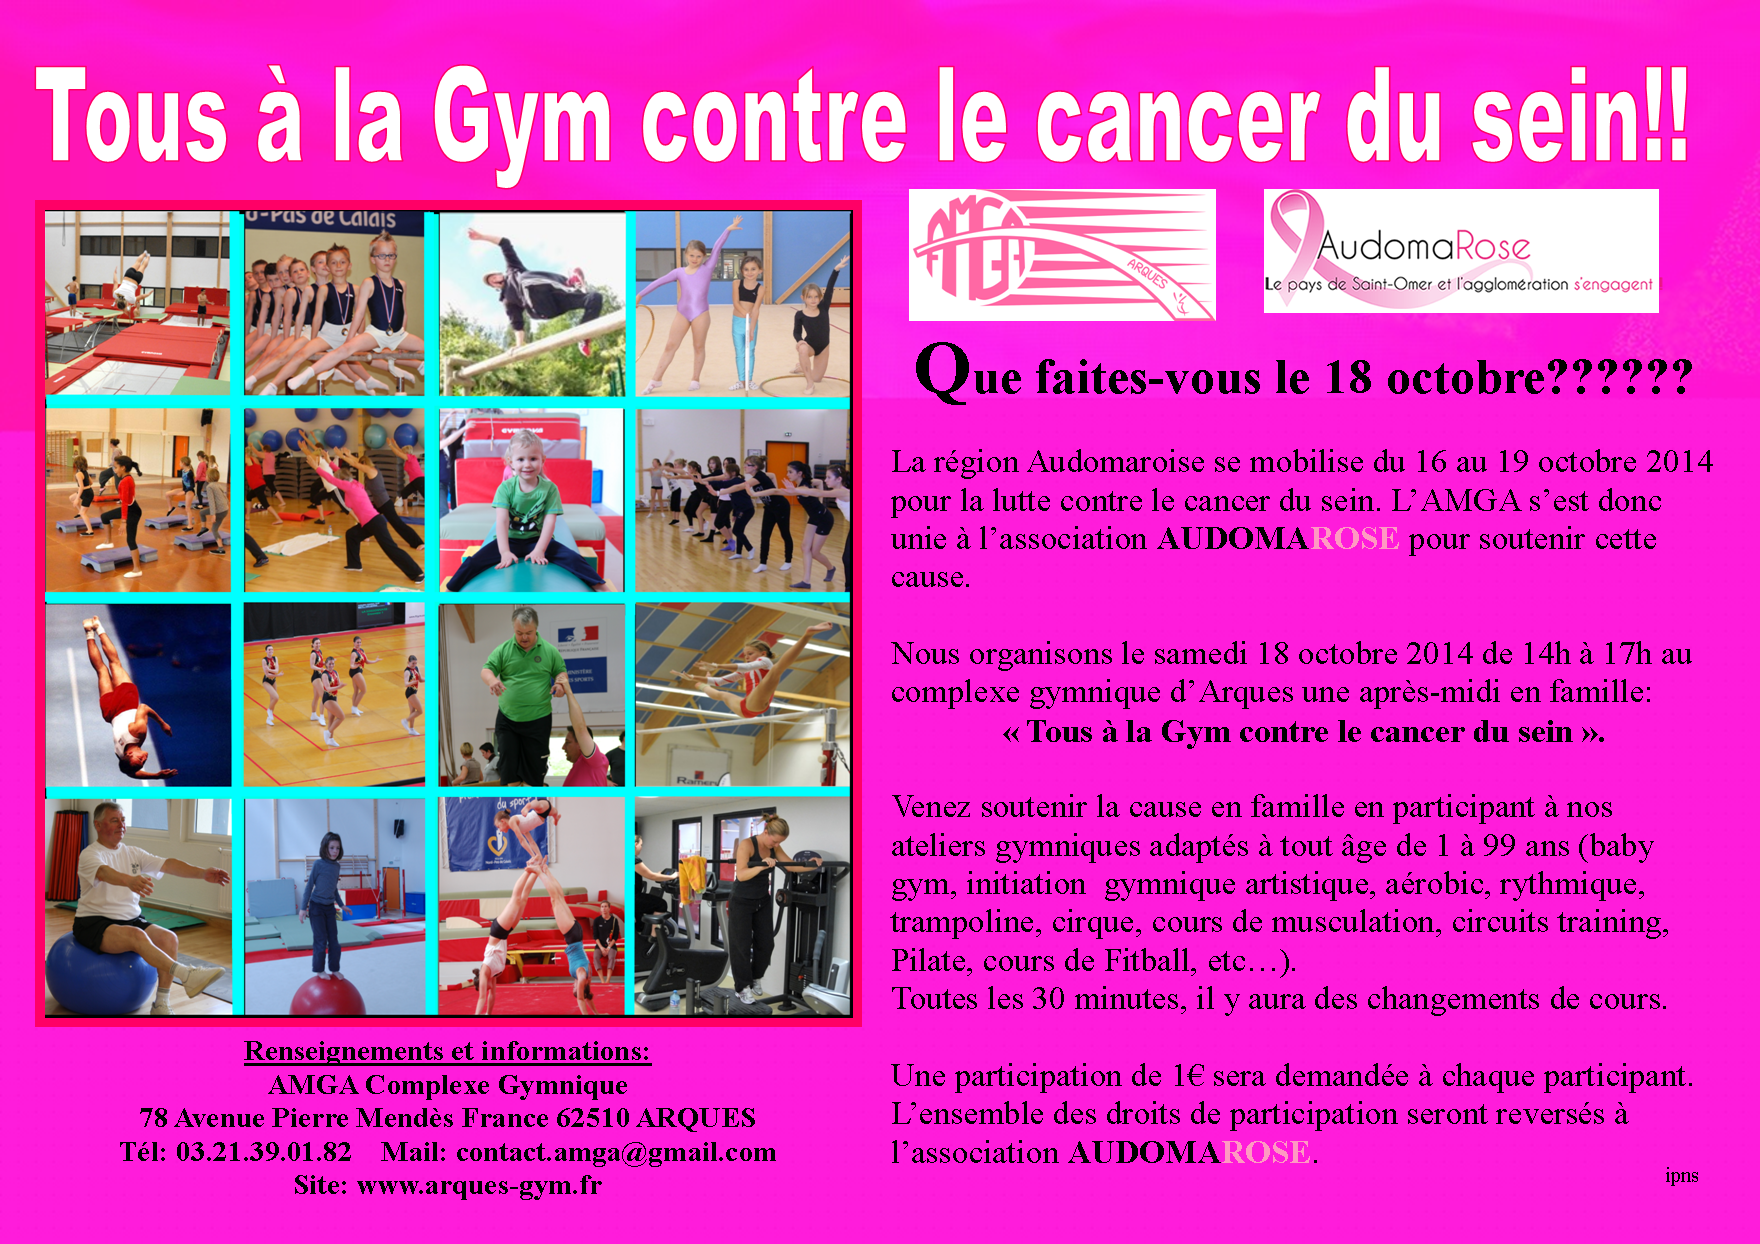 Programme: "Tous à la Gym contre le cancer du sein"